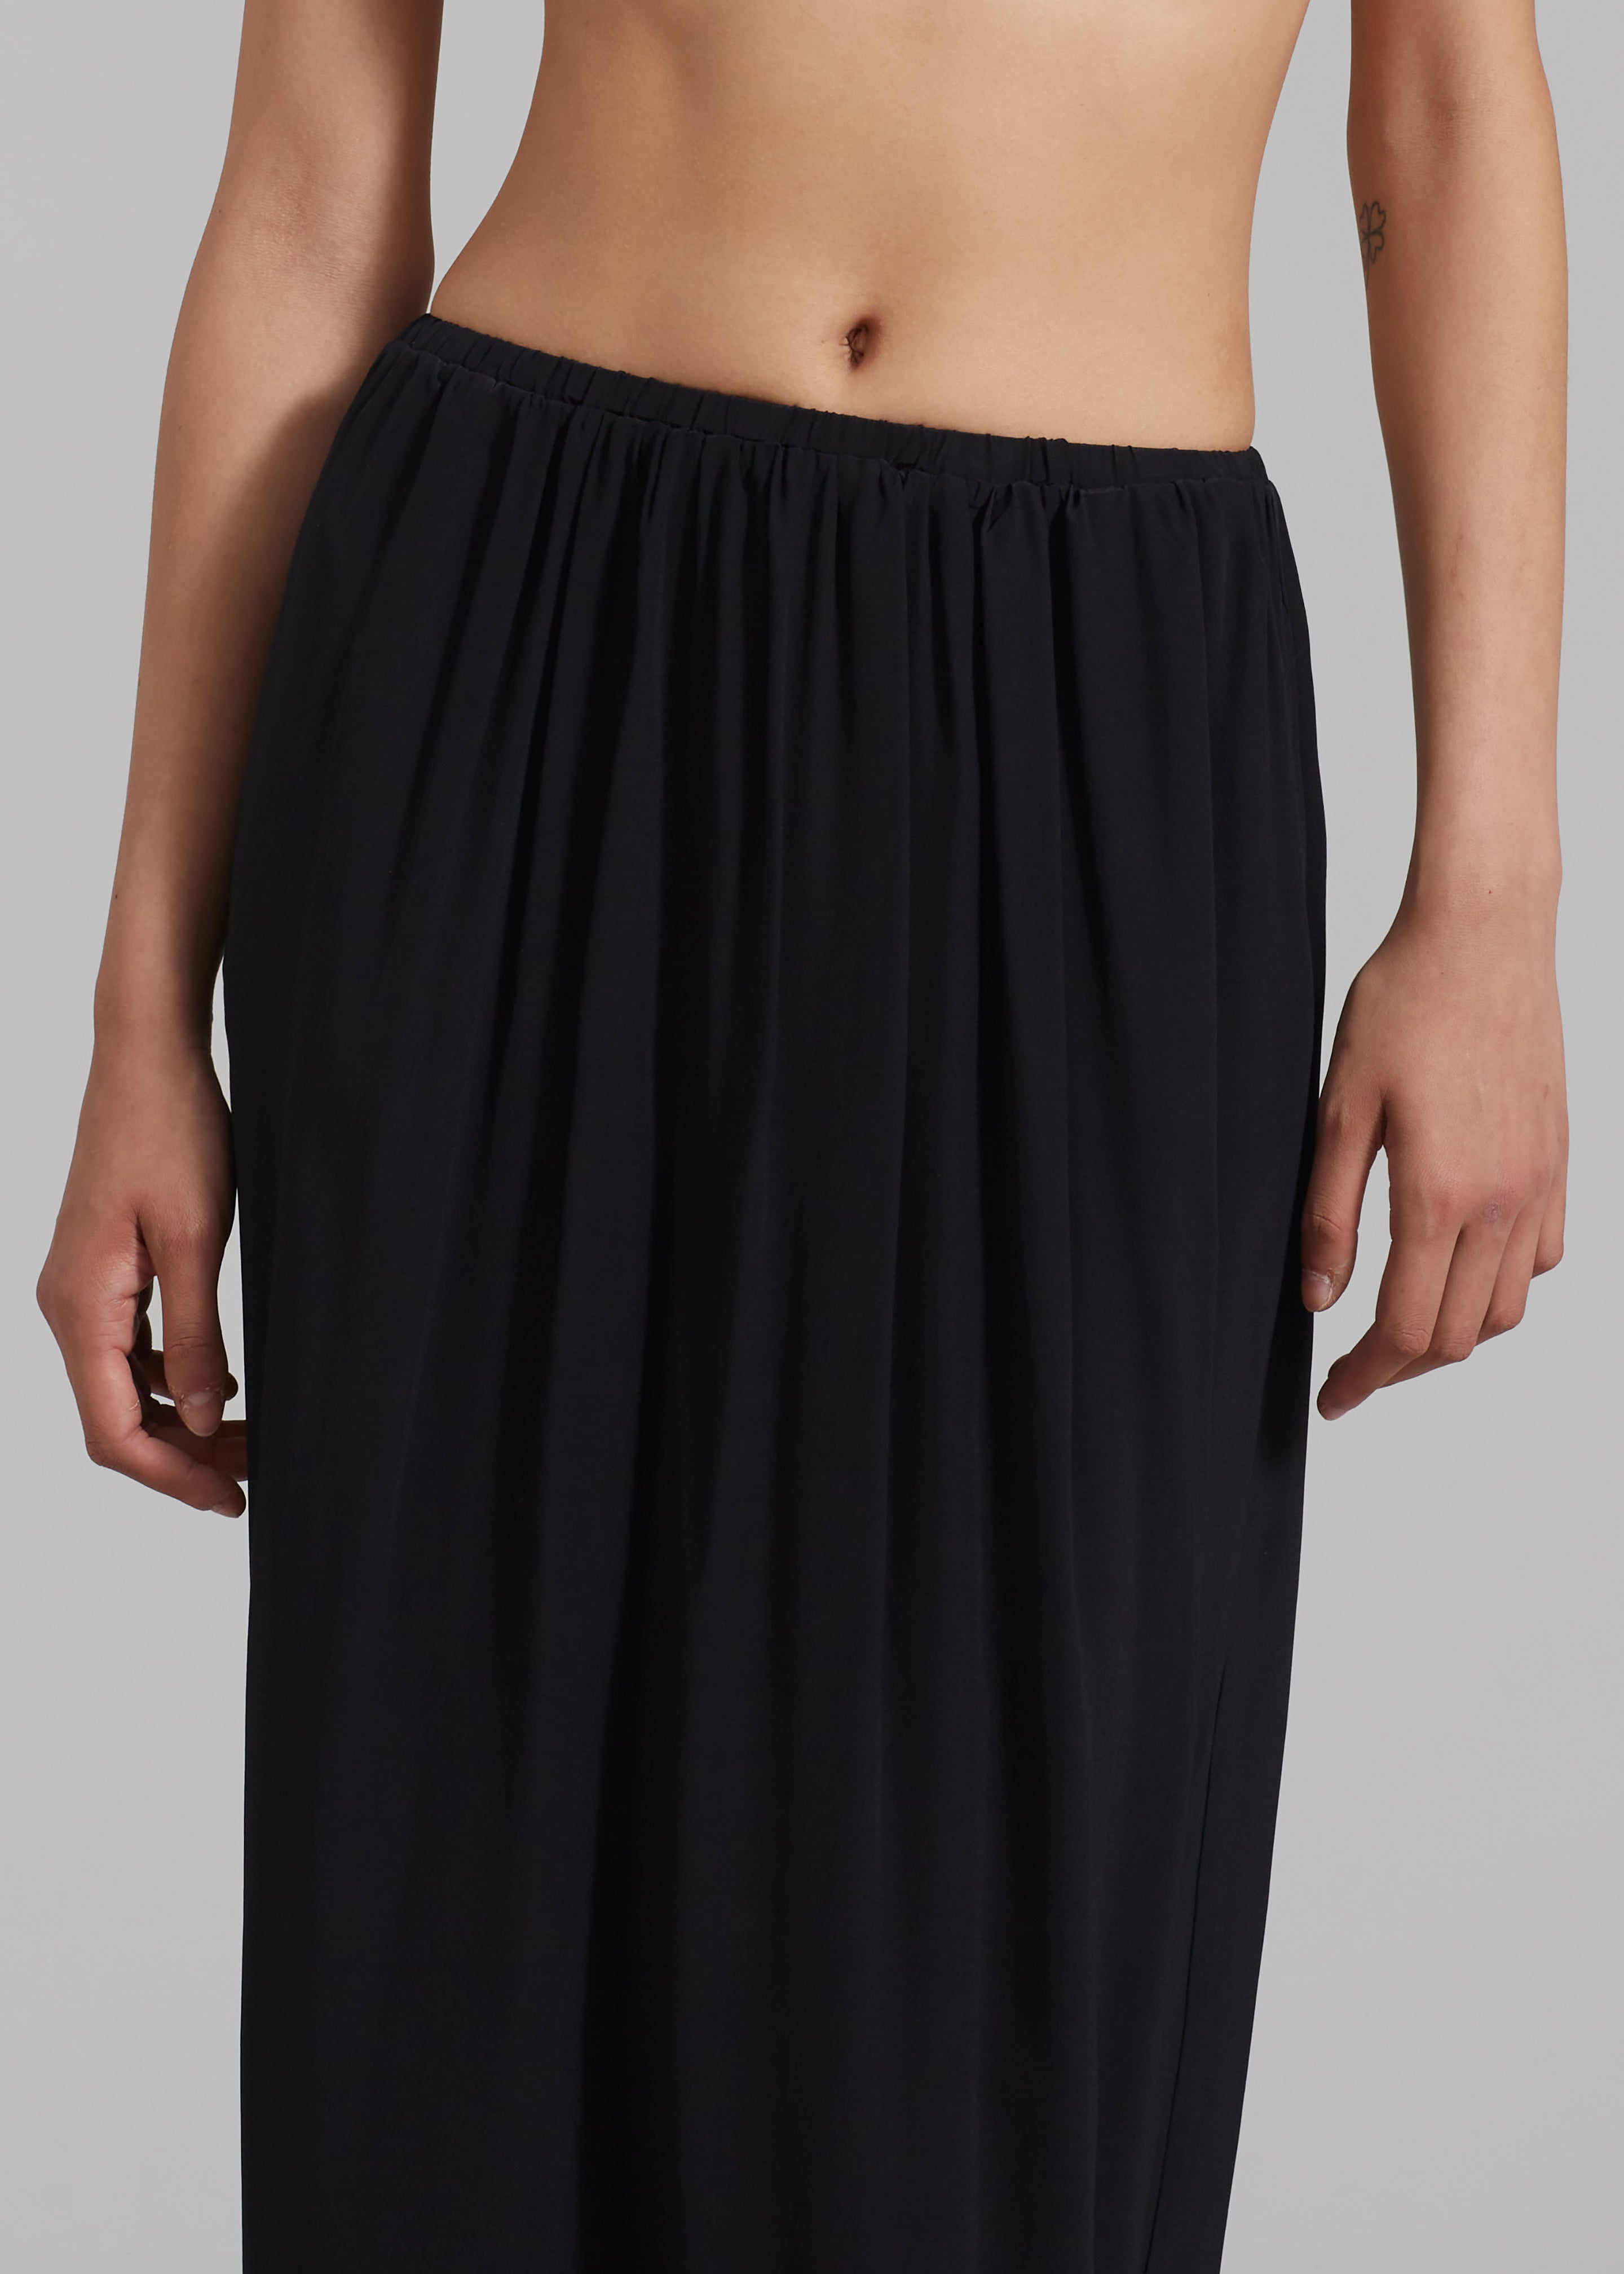 購入しaere high-waist velours skirt 36 スカート スカート